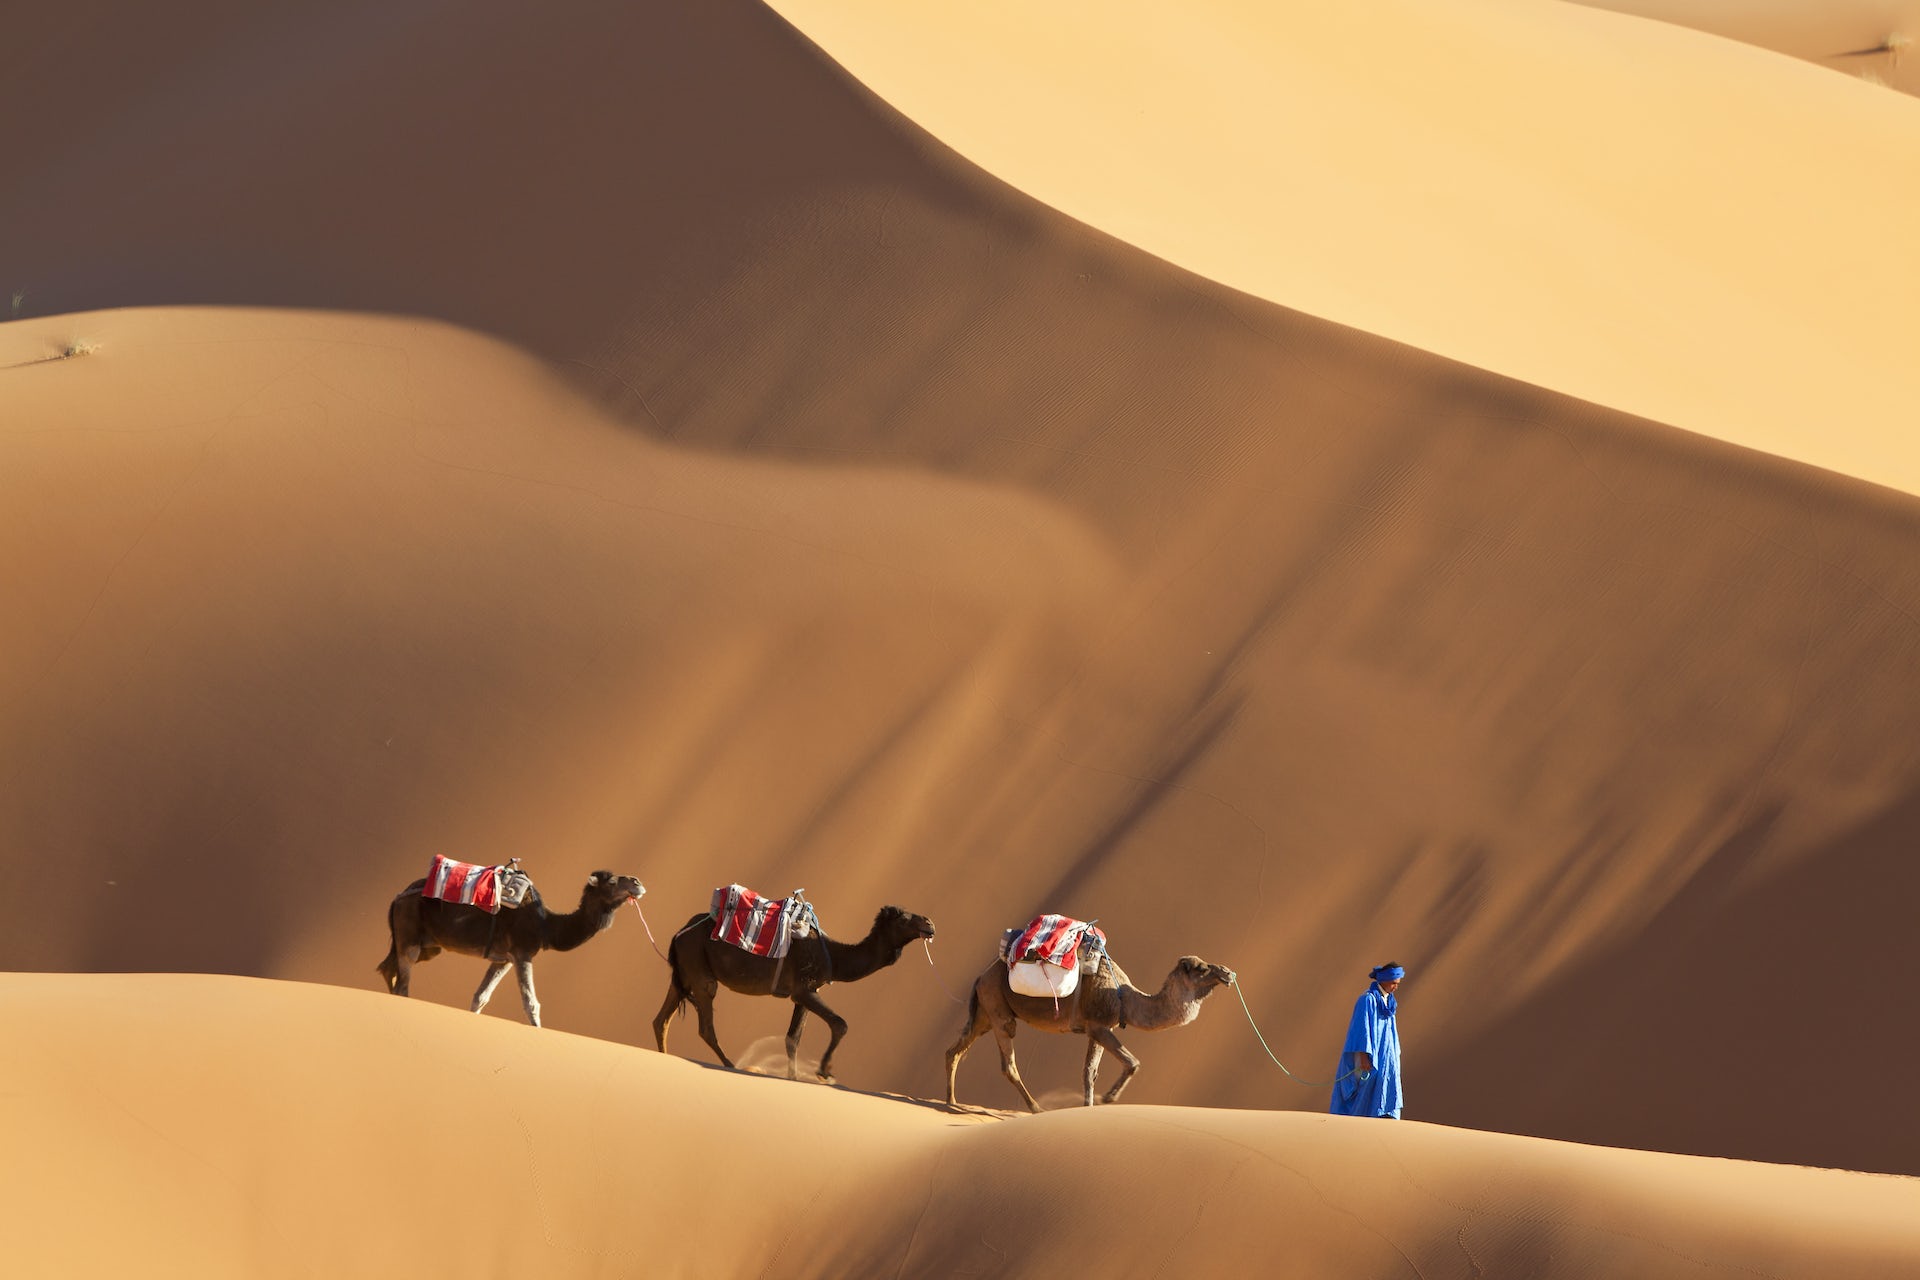 o persoana imbracata conduce trei camile printr-un peisaj cu dune de nisip